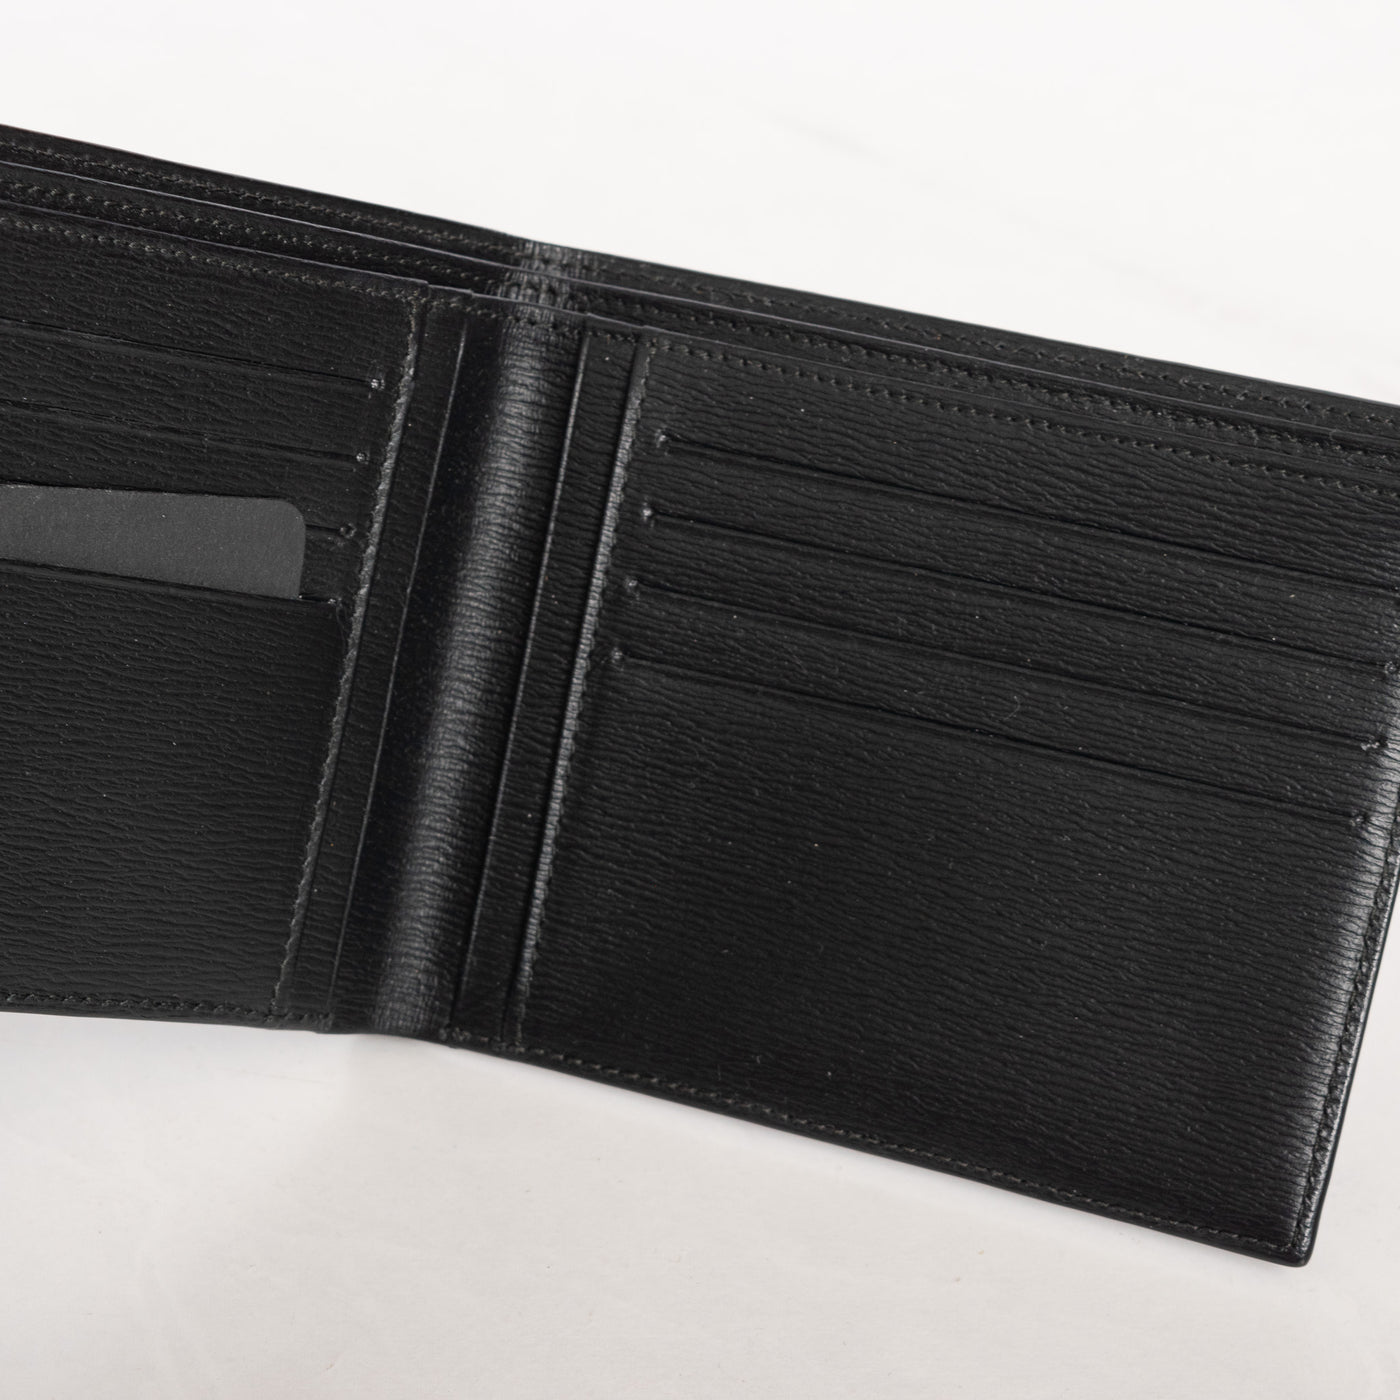 Montblanc Leather Goods Westside 4810 Black 8cc Wallet 8372 inside